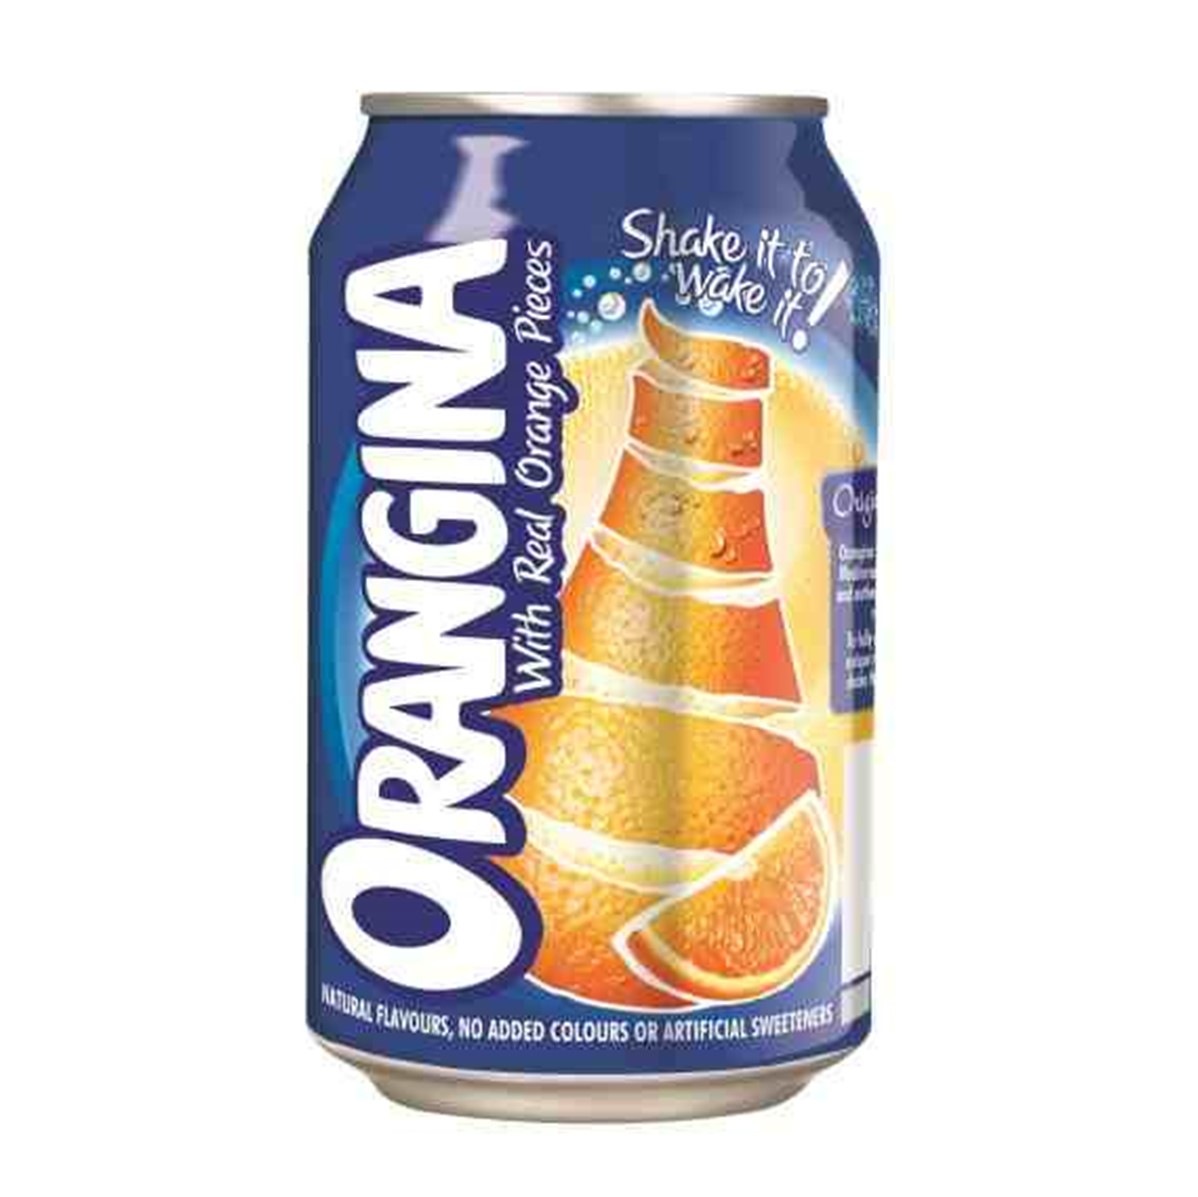 Orangina Regular - 24x330ml cans